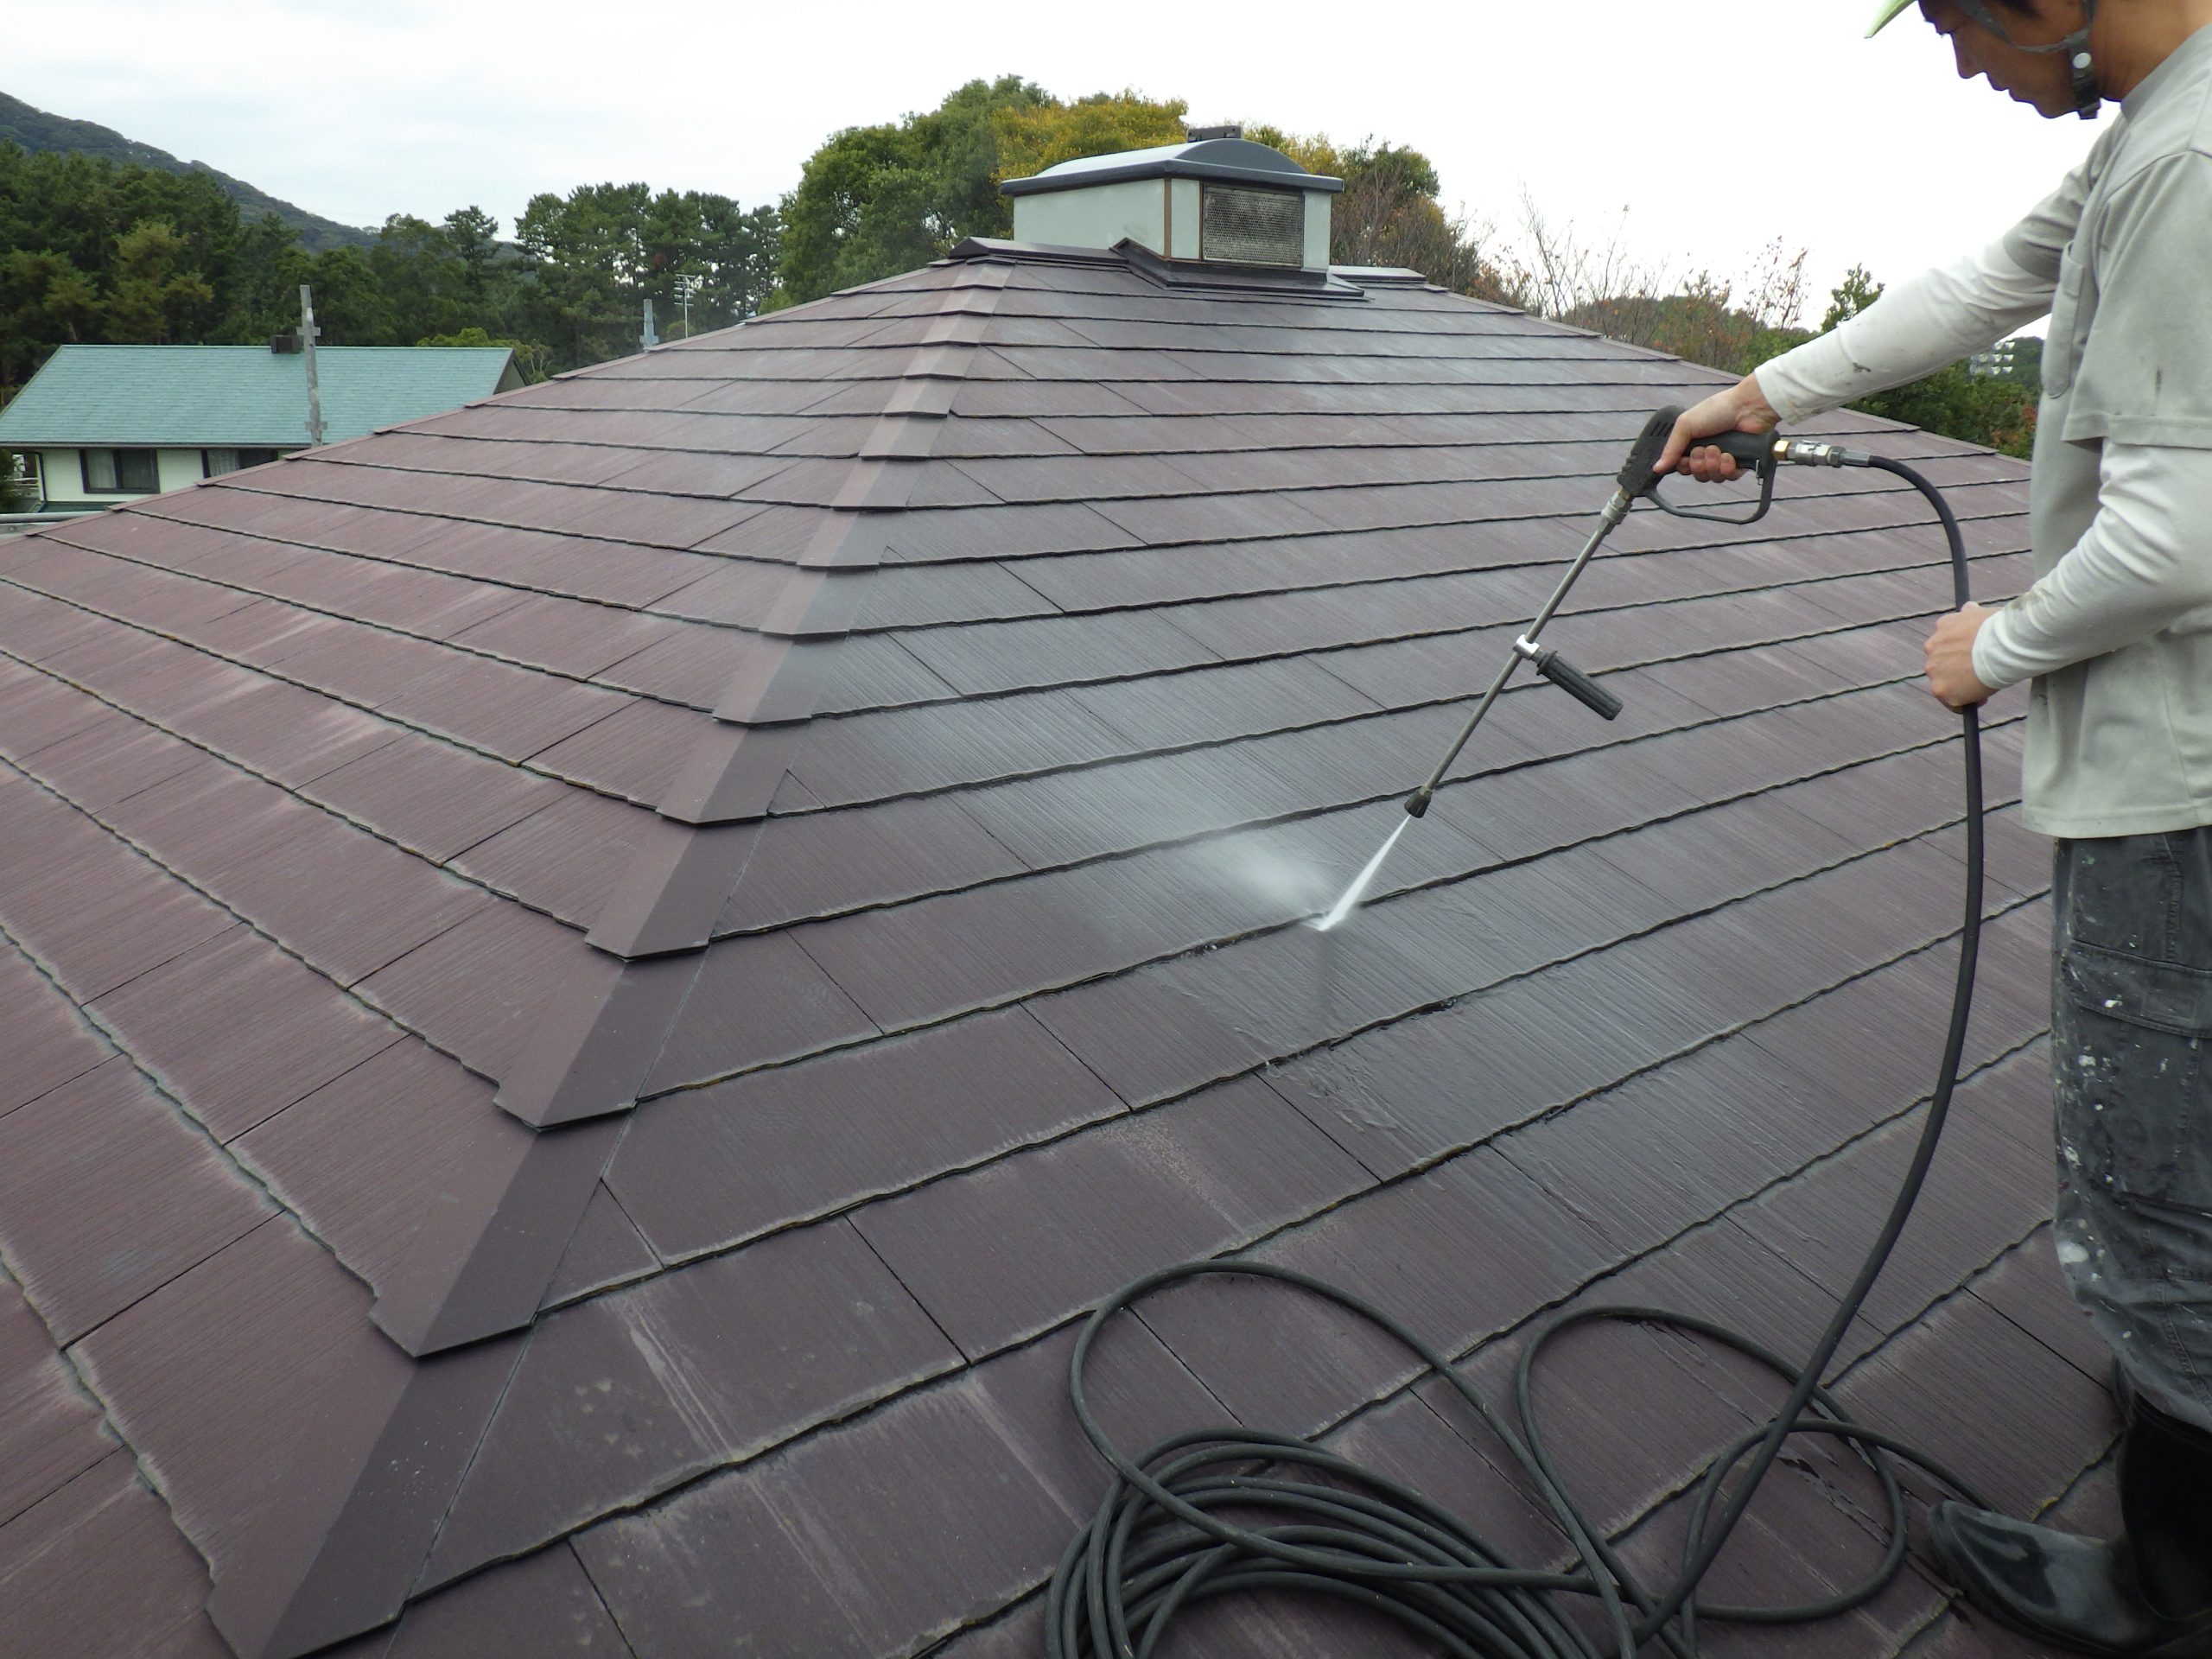 【高圧水洗浄工事 状況】
屋根の汚れを強力な水圧で洗い落とす絶対に欠かせない作業の一つです。
この作業を省きますと、劣化した塗膜には粘着力がなくなっていますので、一緒に新しく塗った塗料まで剥がれてしまいます。